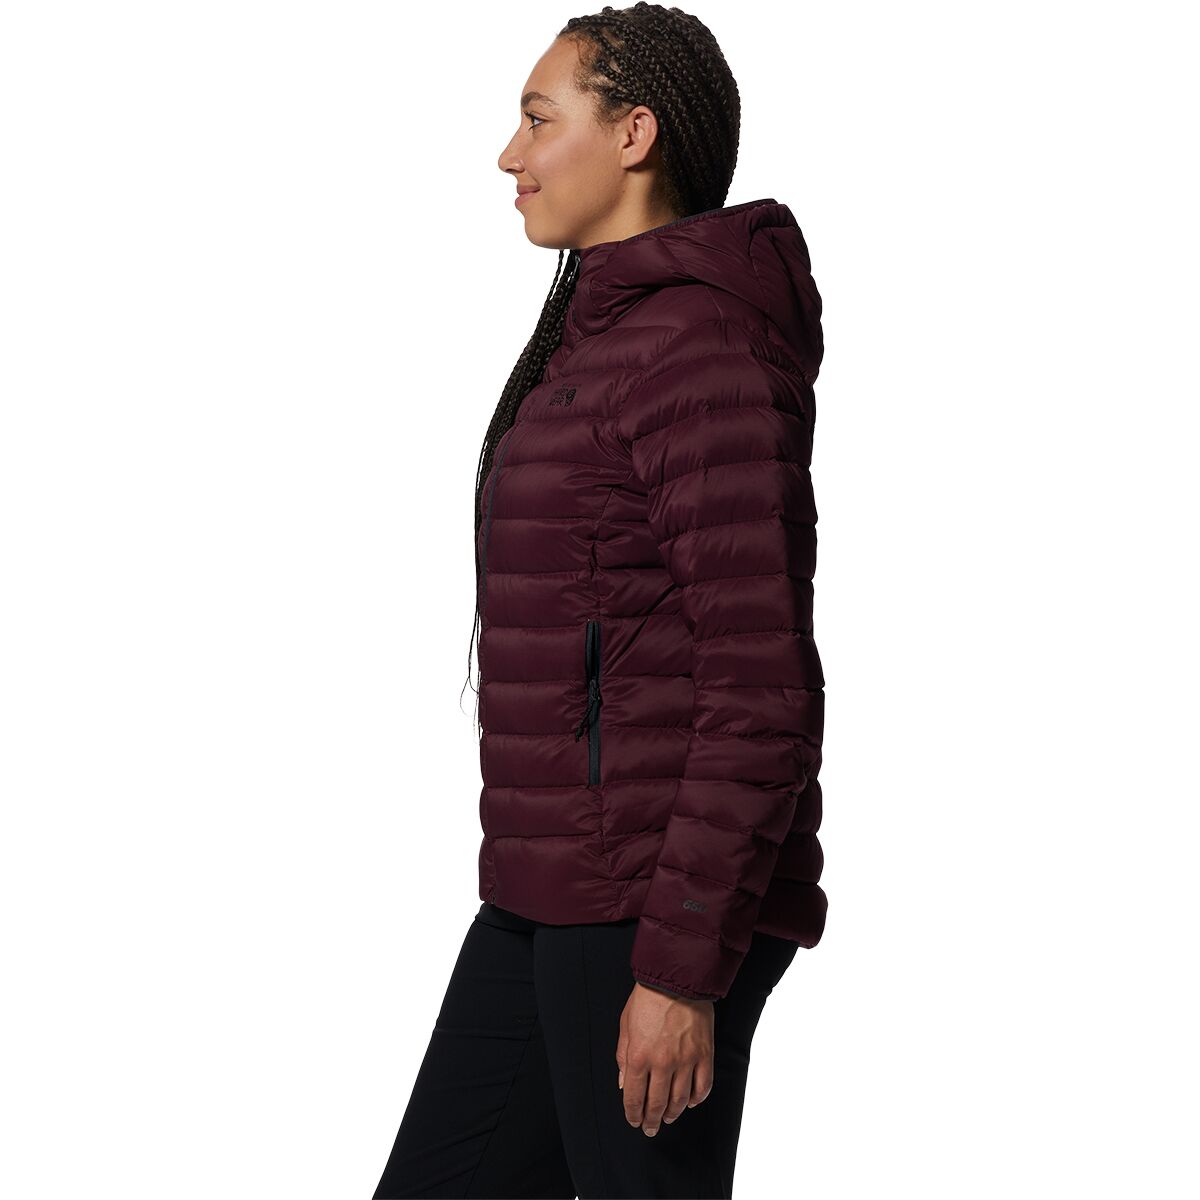 Mountain Hardwear Deloro Down Full-Zip Hooded Jacket - Women's - Clothing